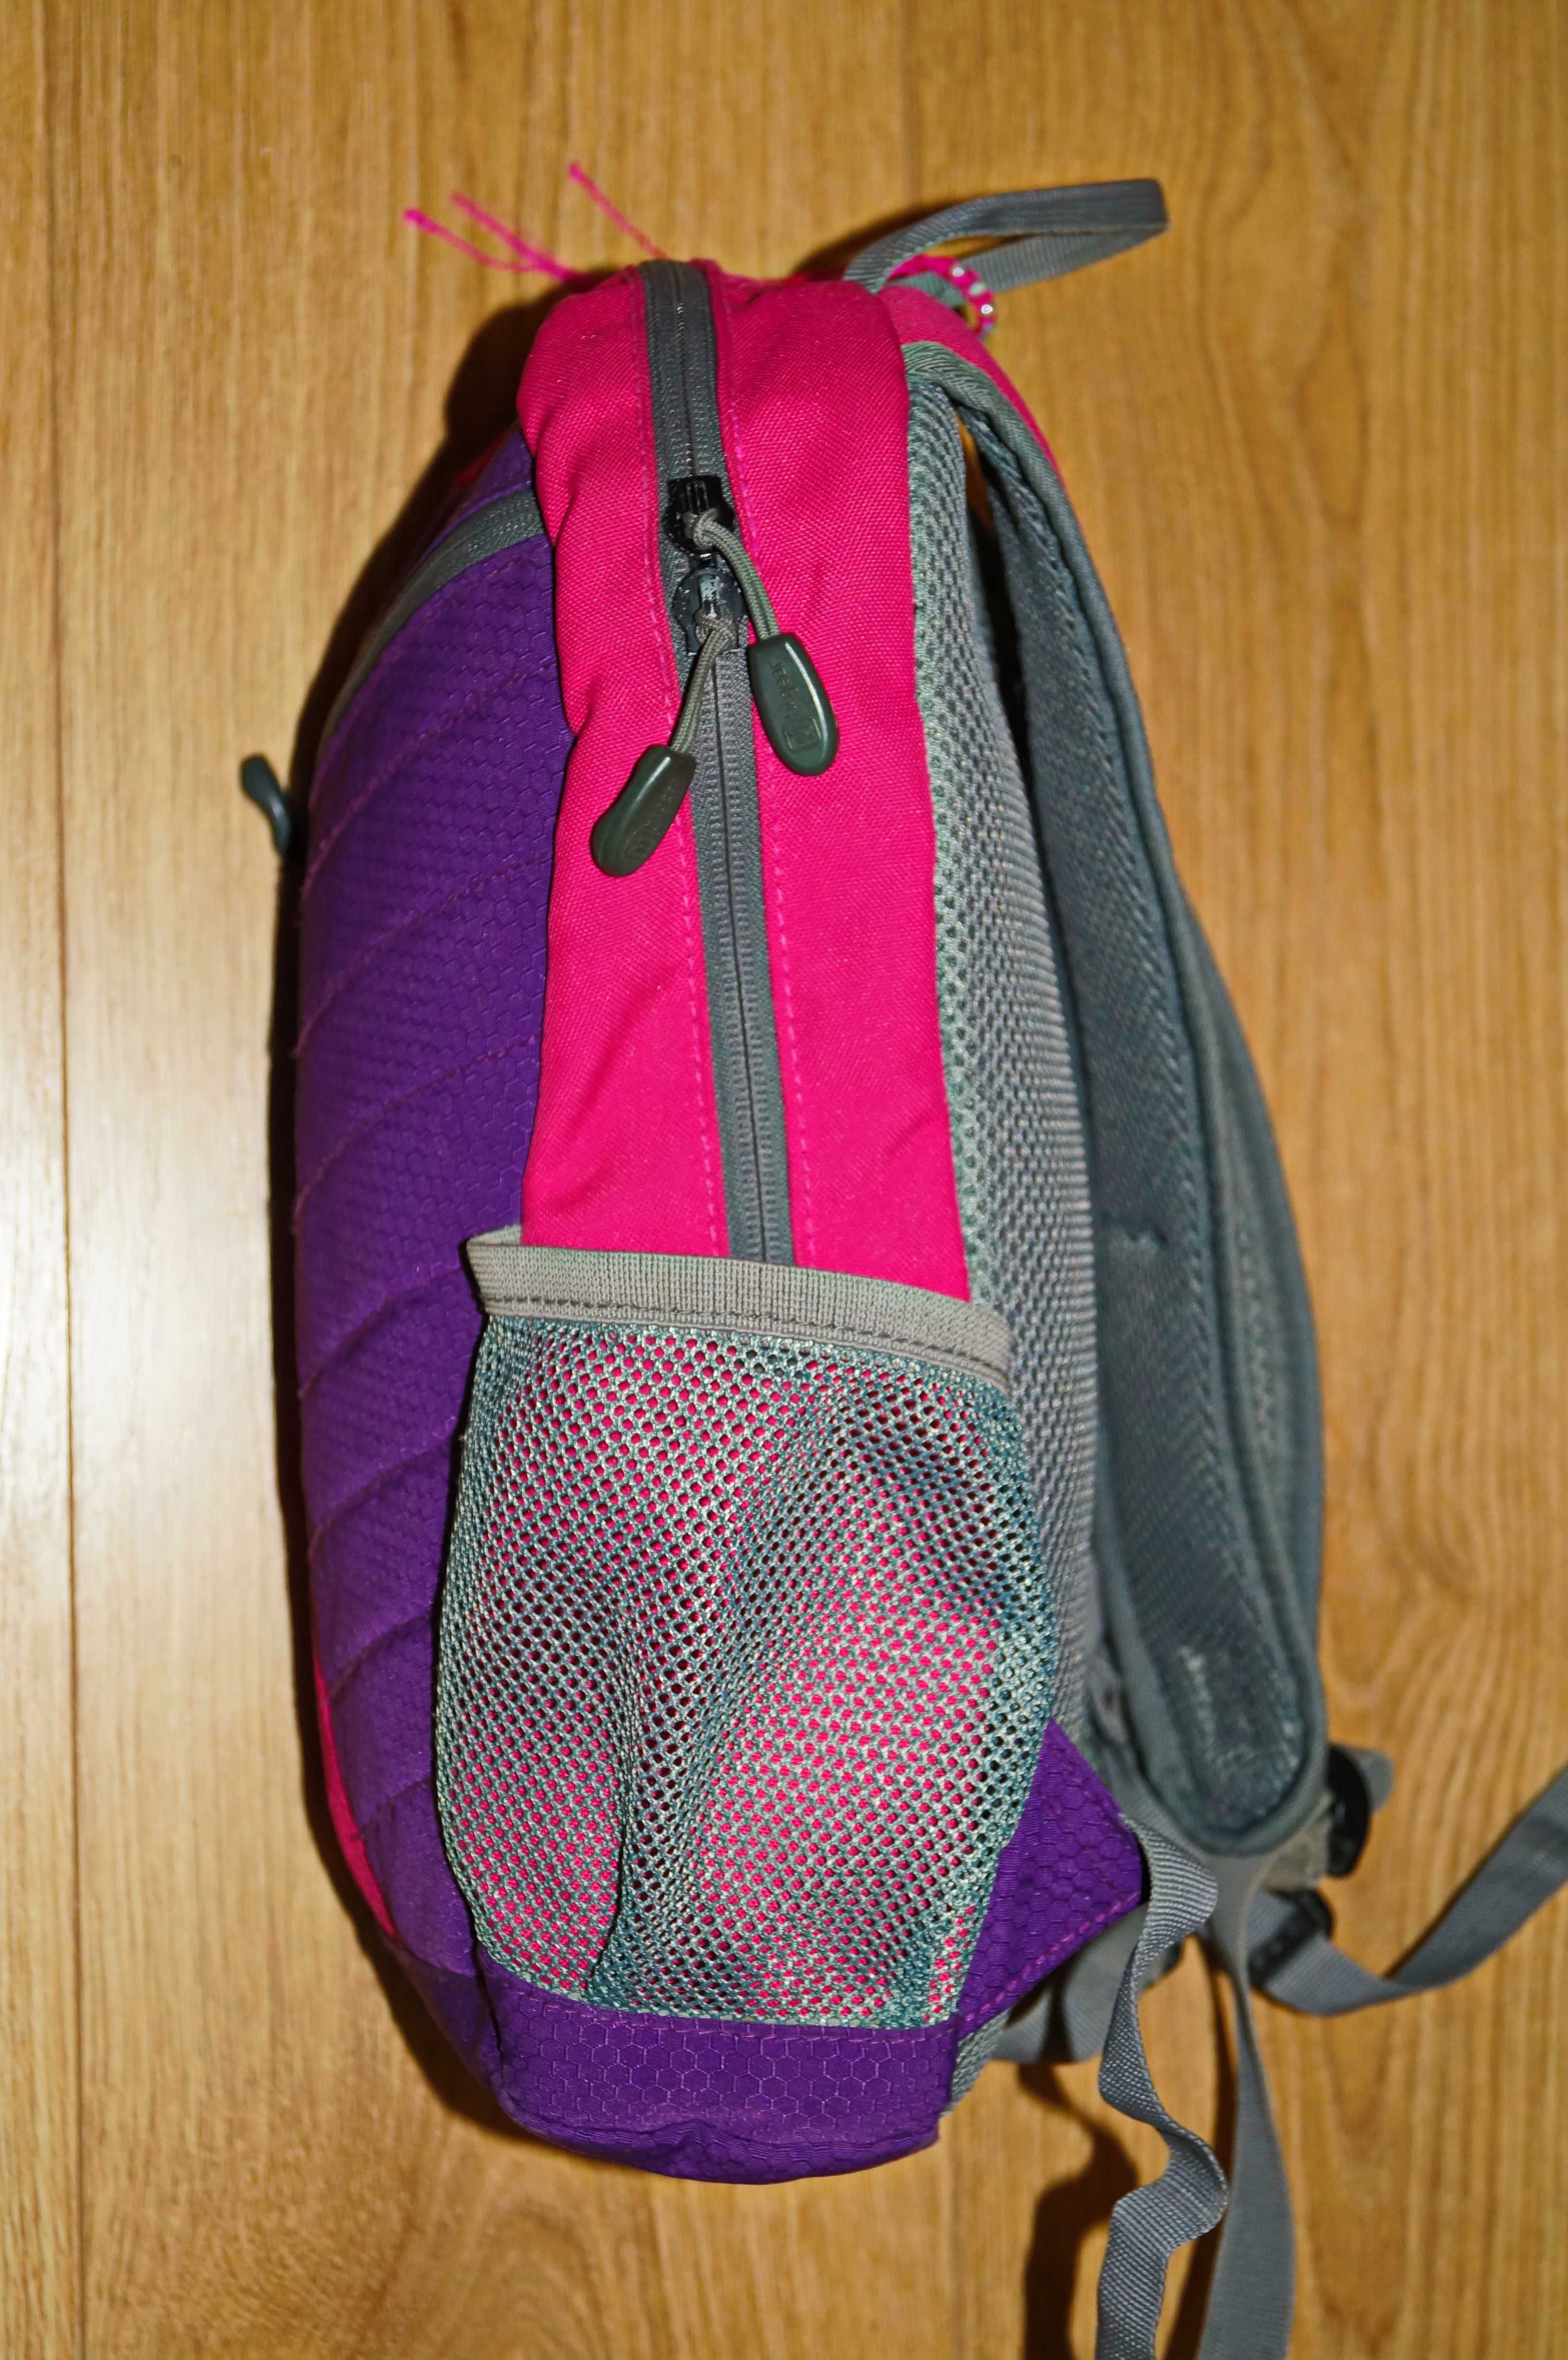 Рюкзак ранец сумка эргономичный Hi Gear детский . Германия. Для спорта